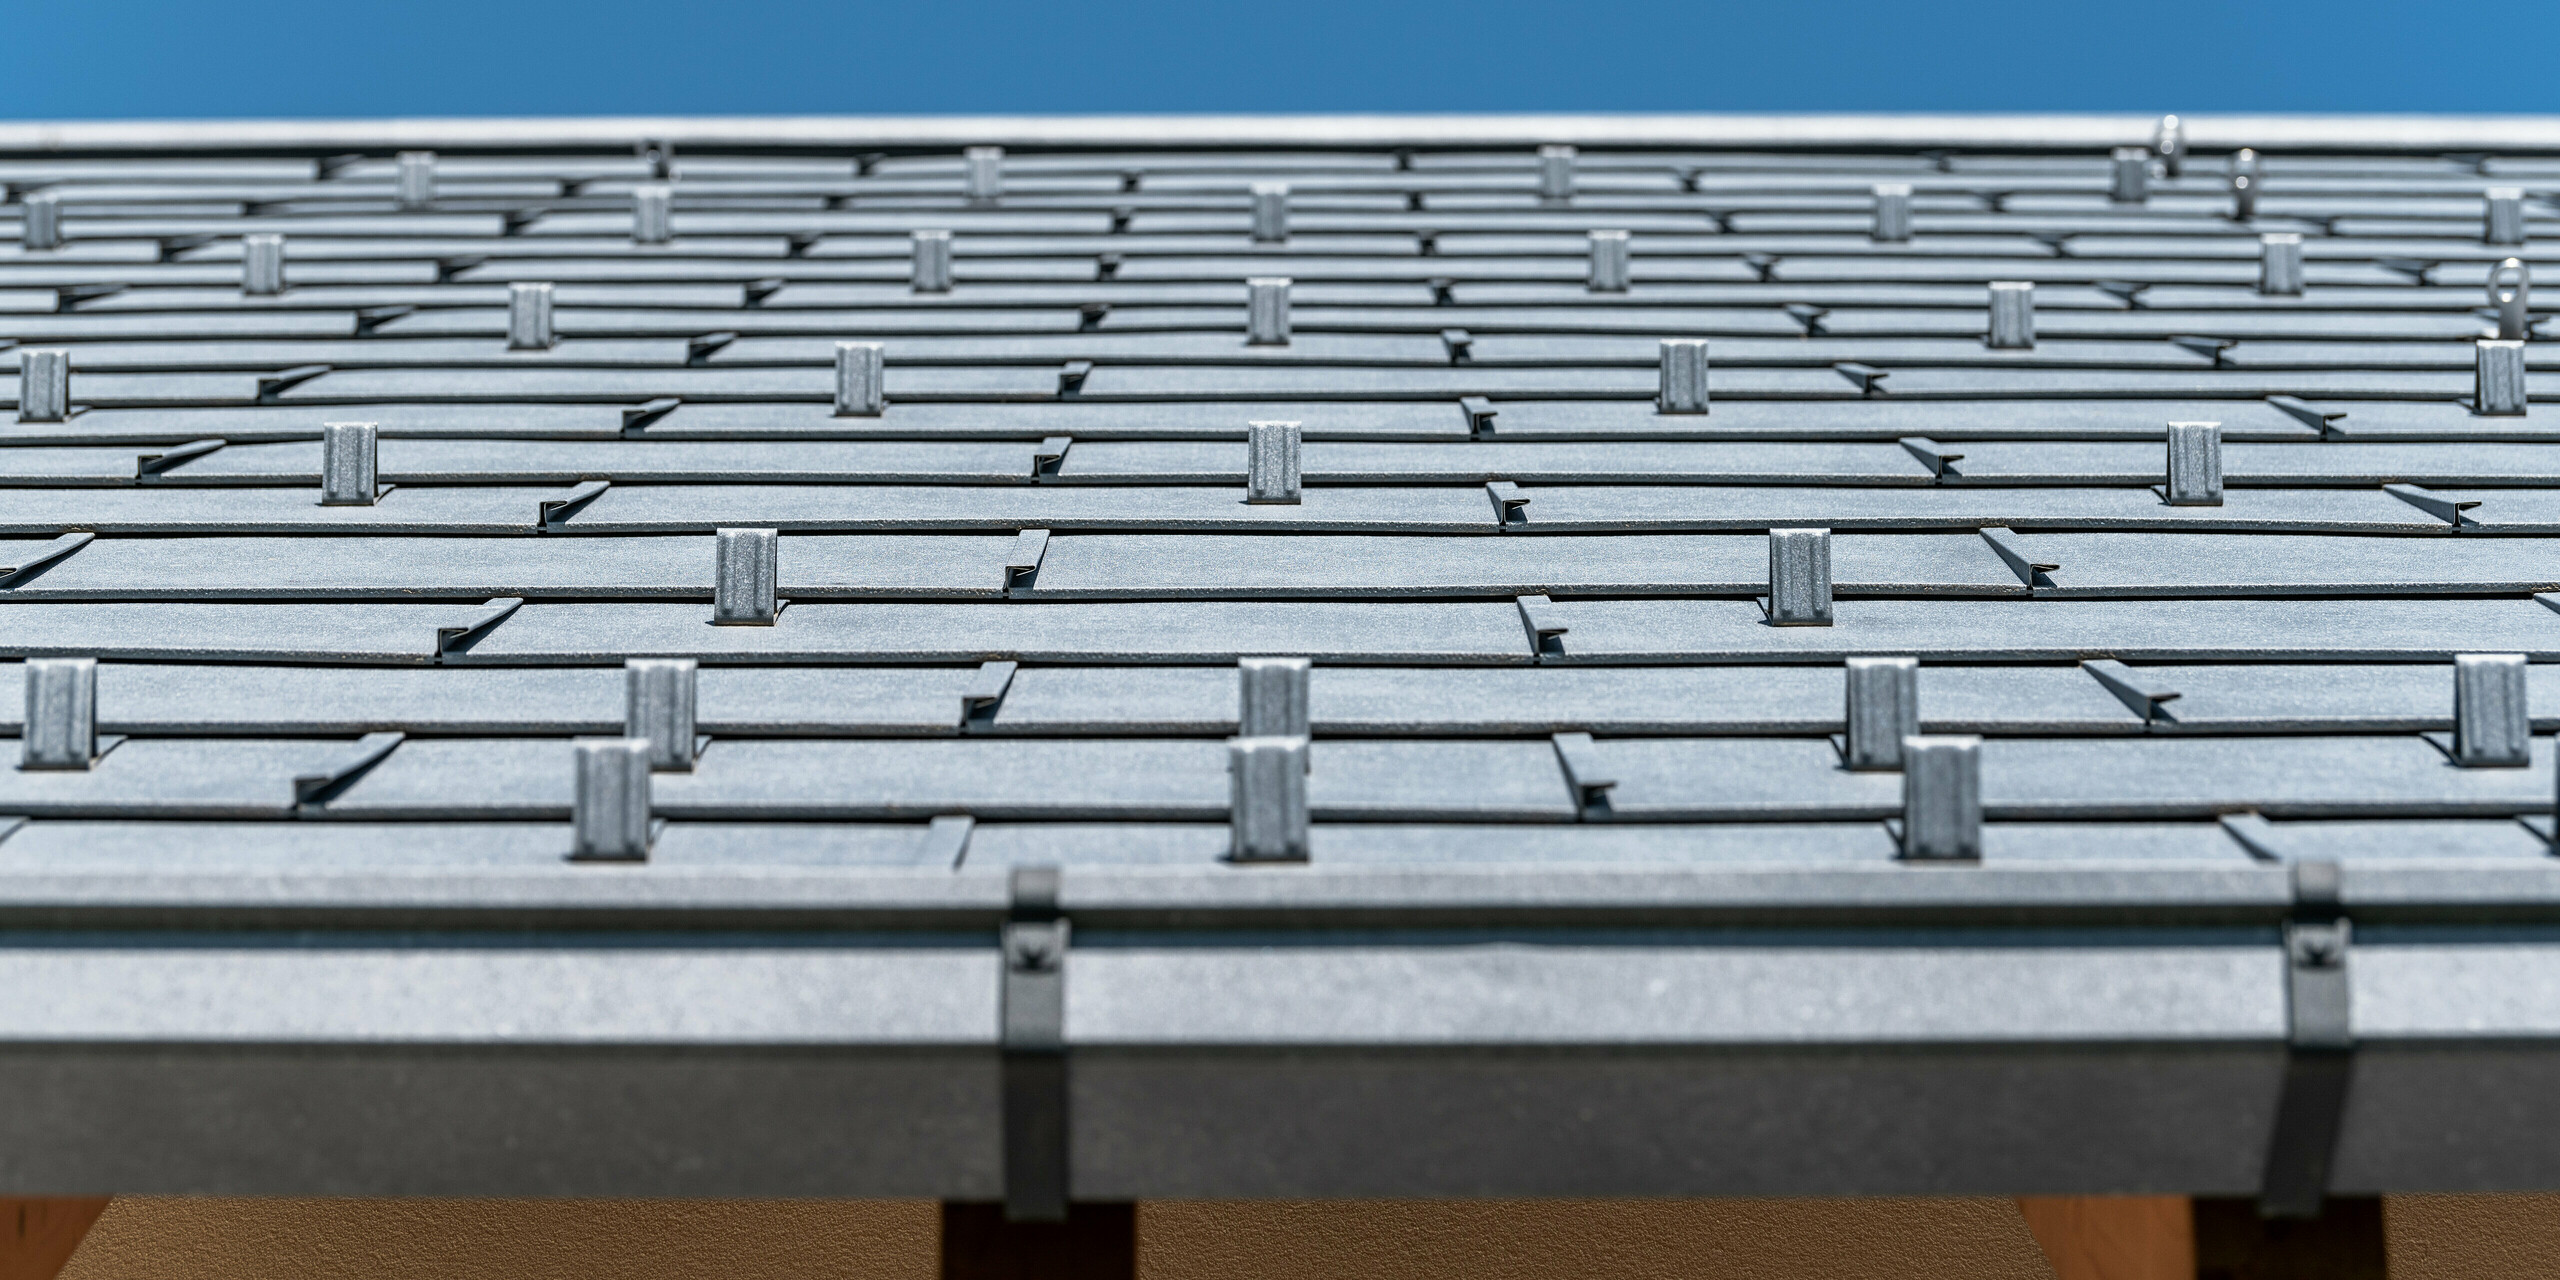 Detailní pohled na střechu PREFA pokrytou střešním panelem R.16 v barvě P.10 antracit. Na obrázku jsou precizně zpracované hliníkové střešní panely. Záběr vyzdvihuje výraznou strukturu a moderní design střechy, který kontrastuje s jasně modrou oblohou a podtrhuje inovativní a odolné řešení zastřešení PREFA.